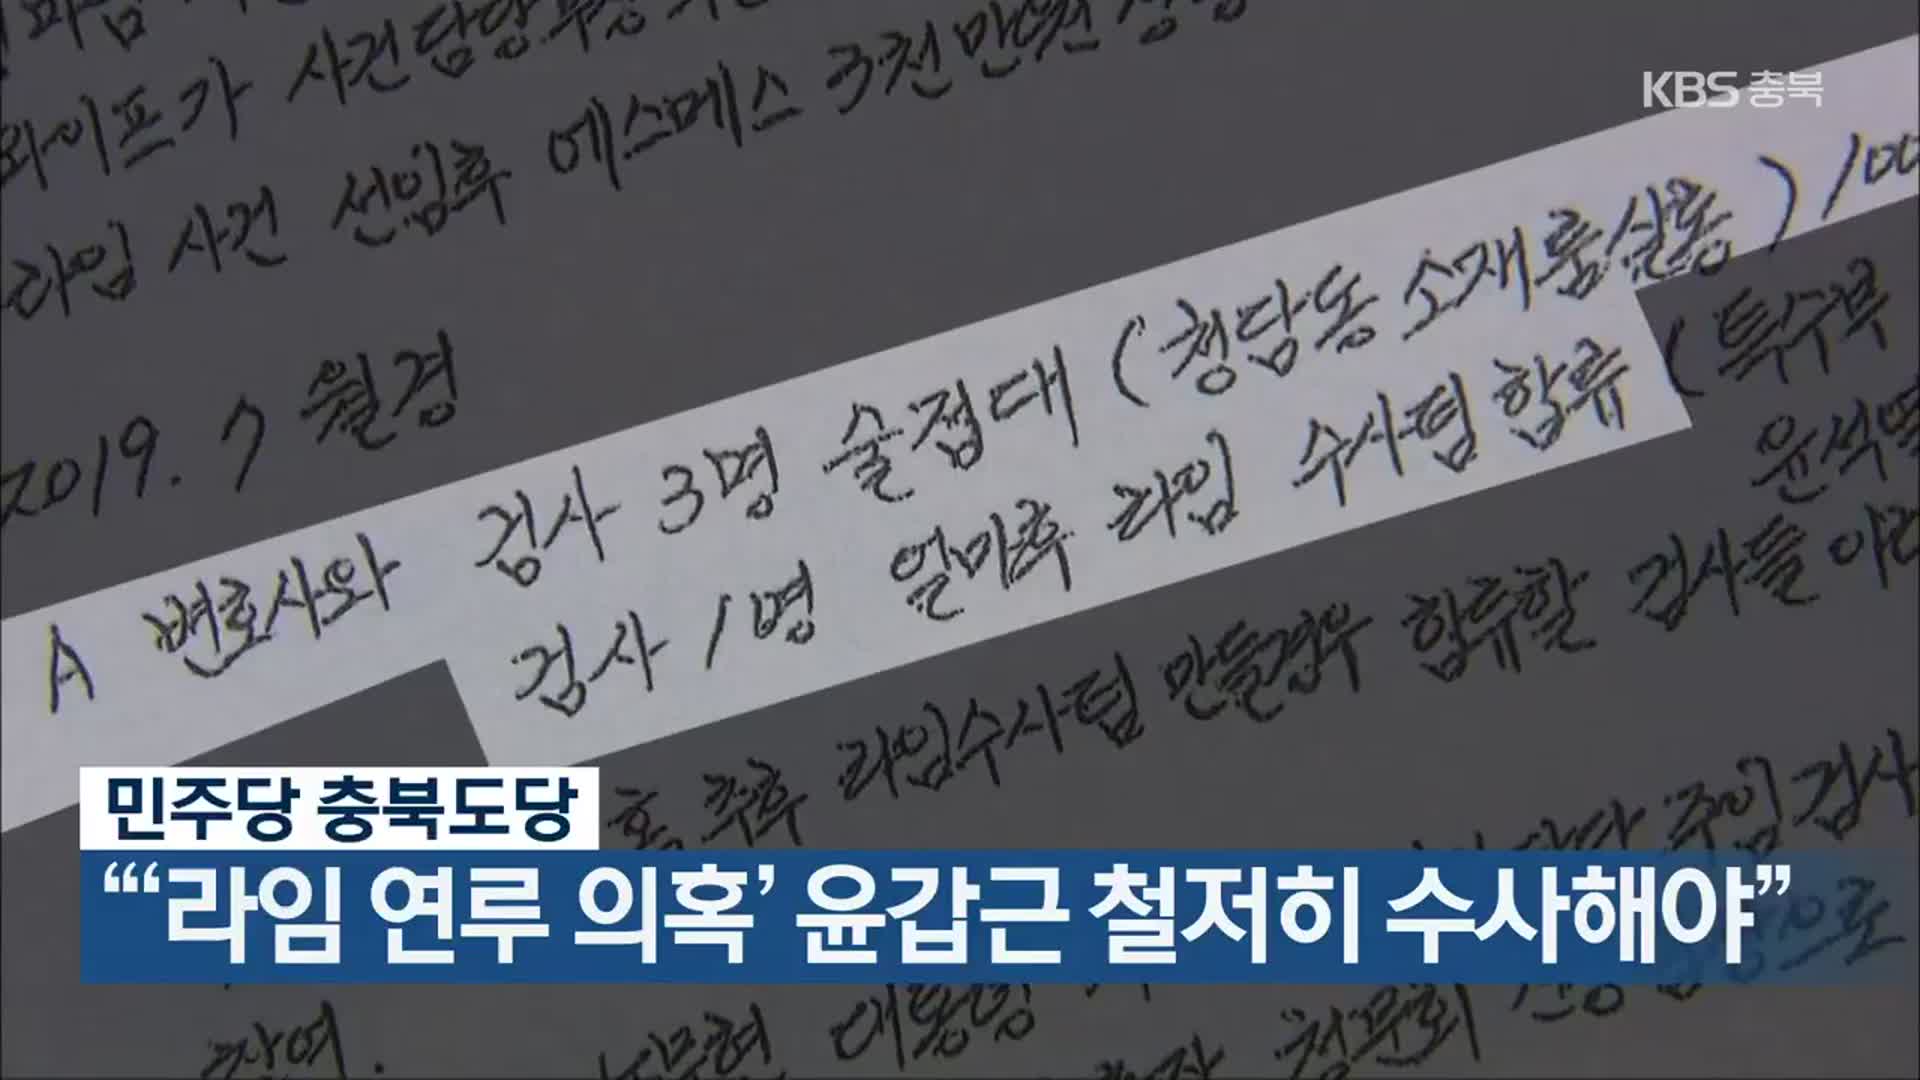 민주당 충북도당 “‘라임 연루 의혹’ 윤갑근 철저히 수사해야”